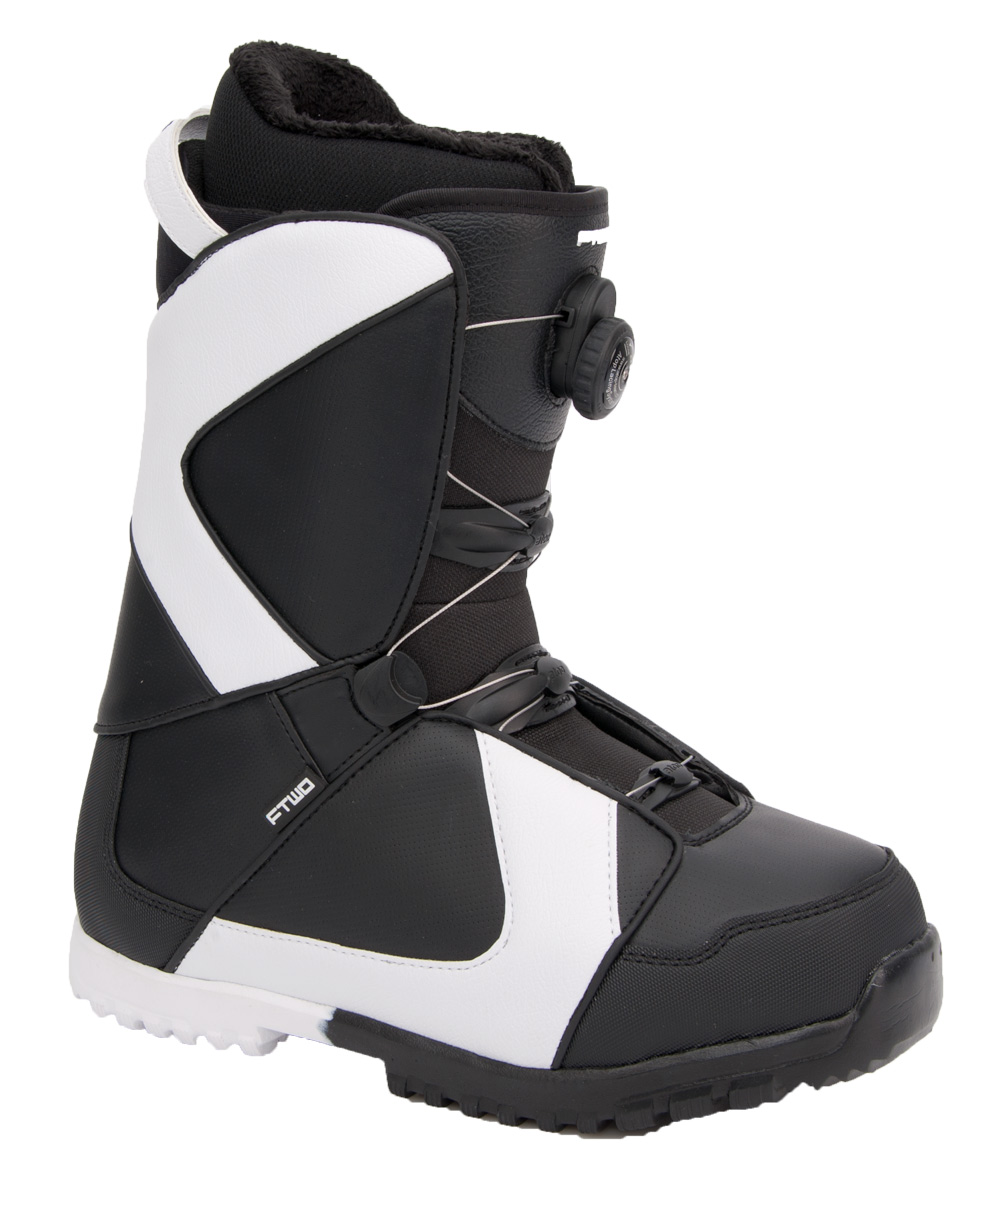 Ботинки сноубордические F2 Air размер 31,0 black/black фото 